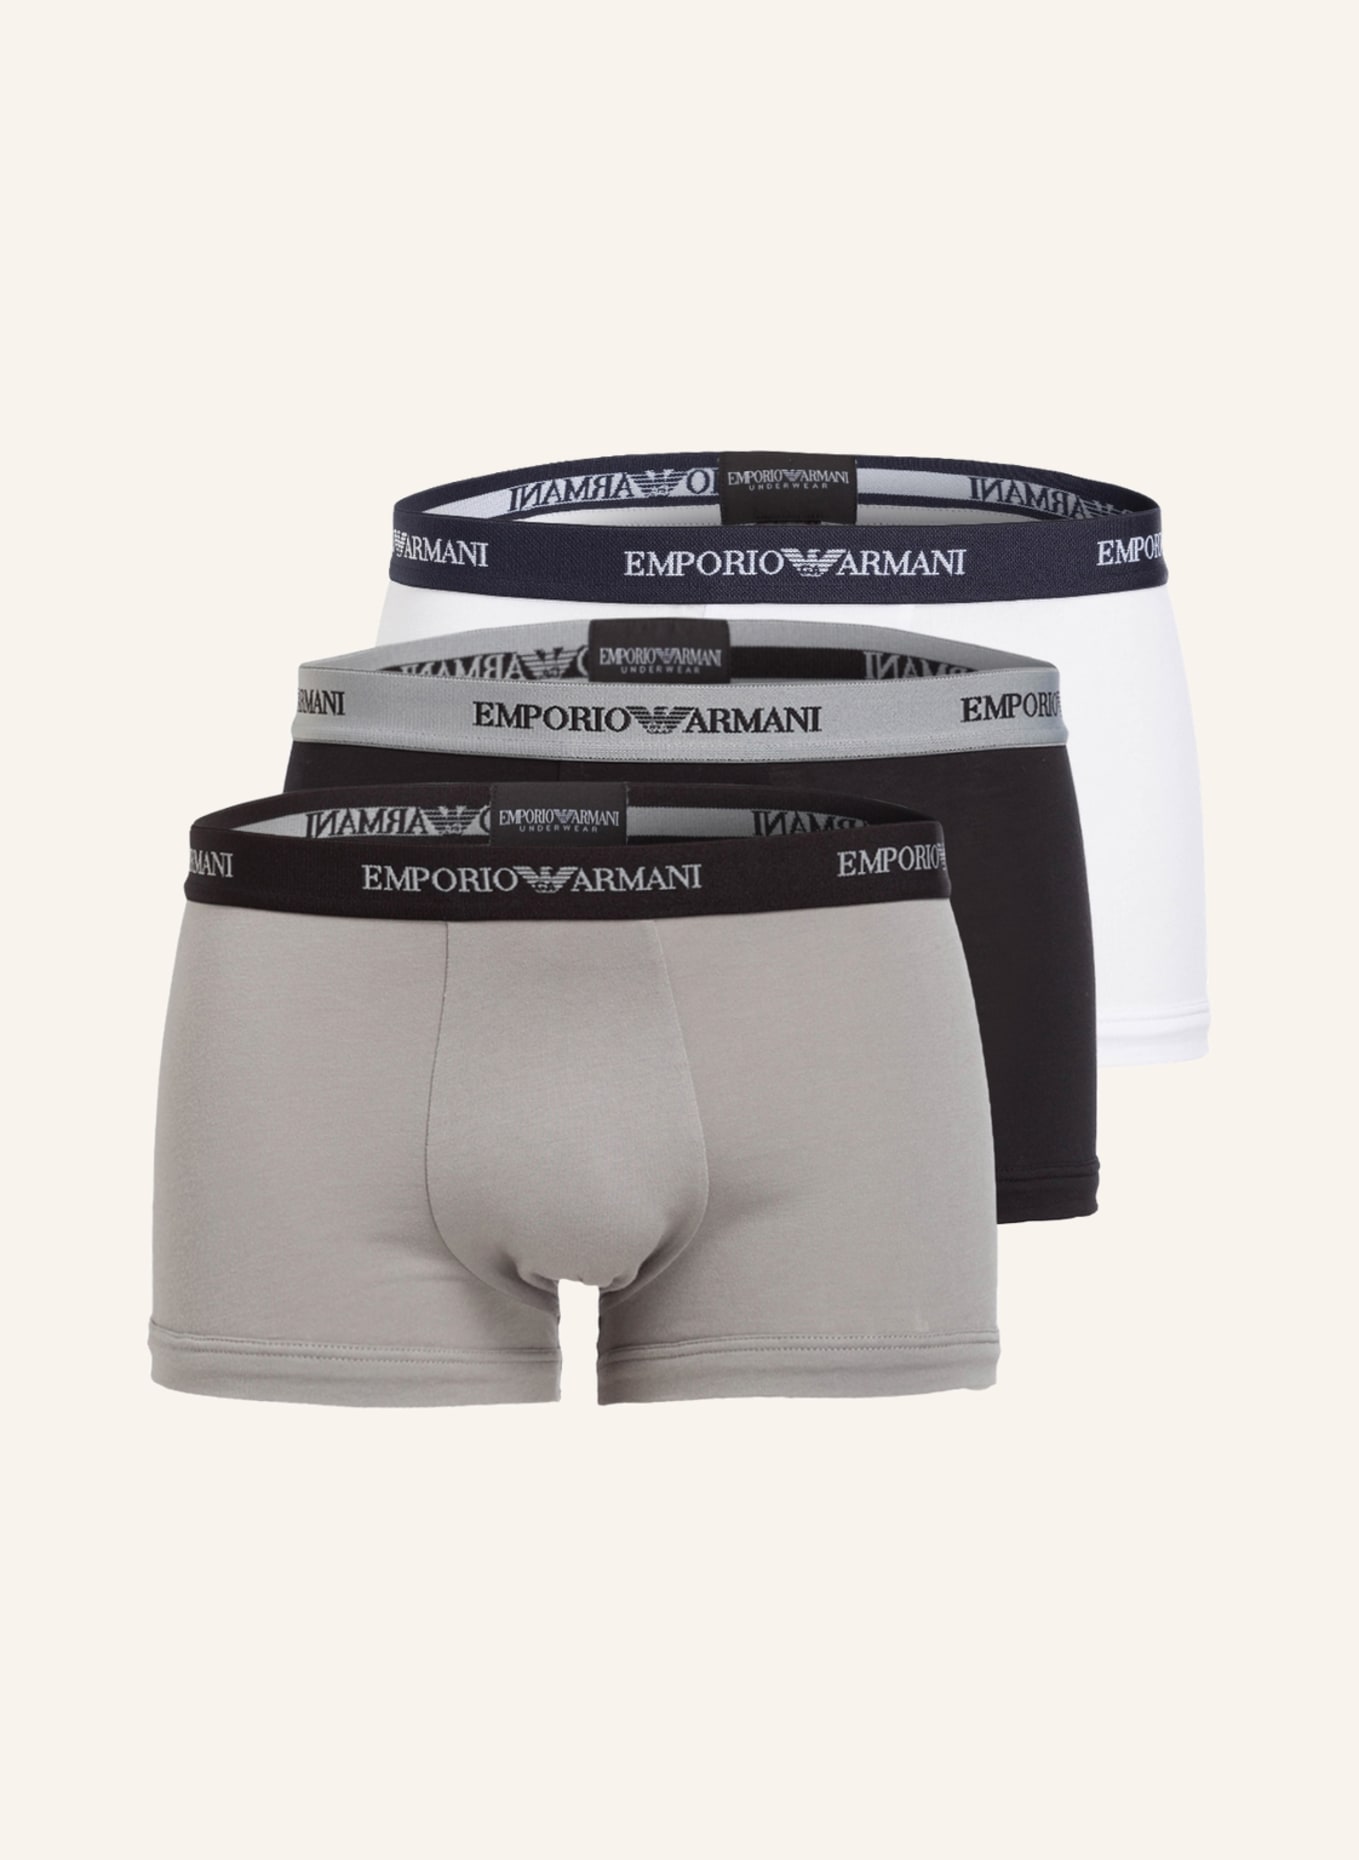 EMPORIO ARMANI 3-pack boxer shorts, Color: BLACK/ WHITE/ GRAY (Image 1)